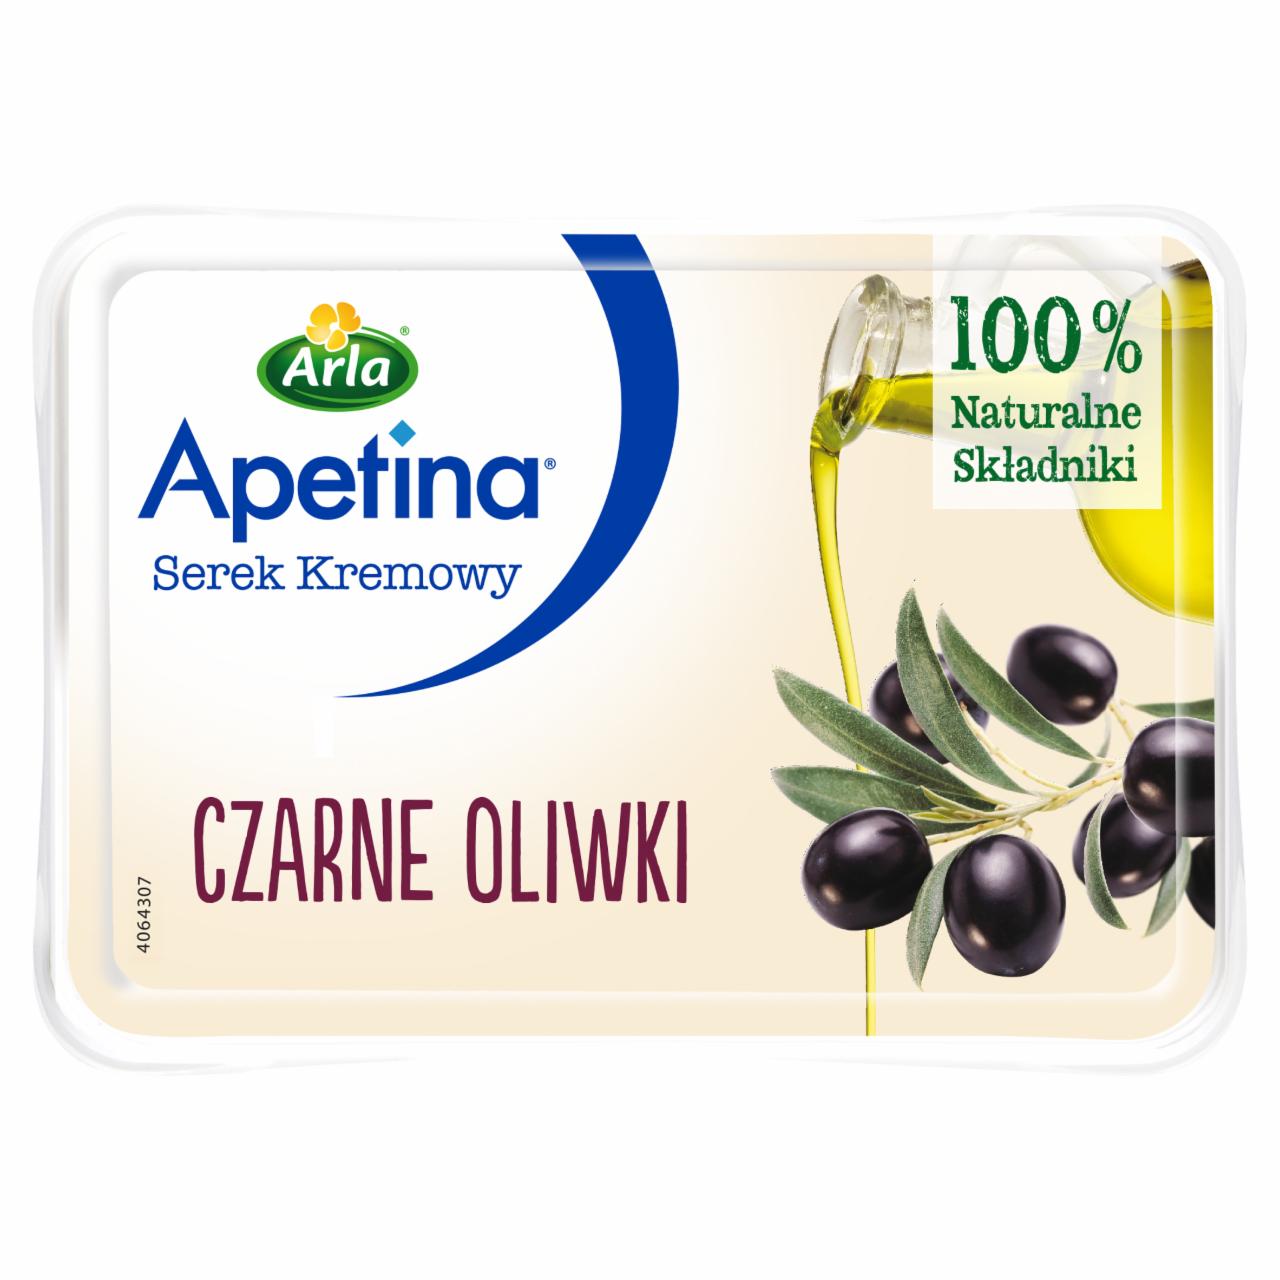 Zdjęcia - Apetina Serek kremowy czarne oliwki 125 g